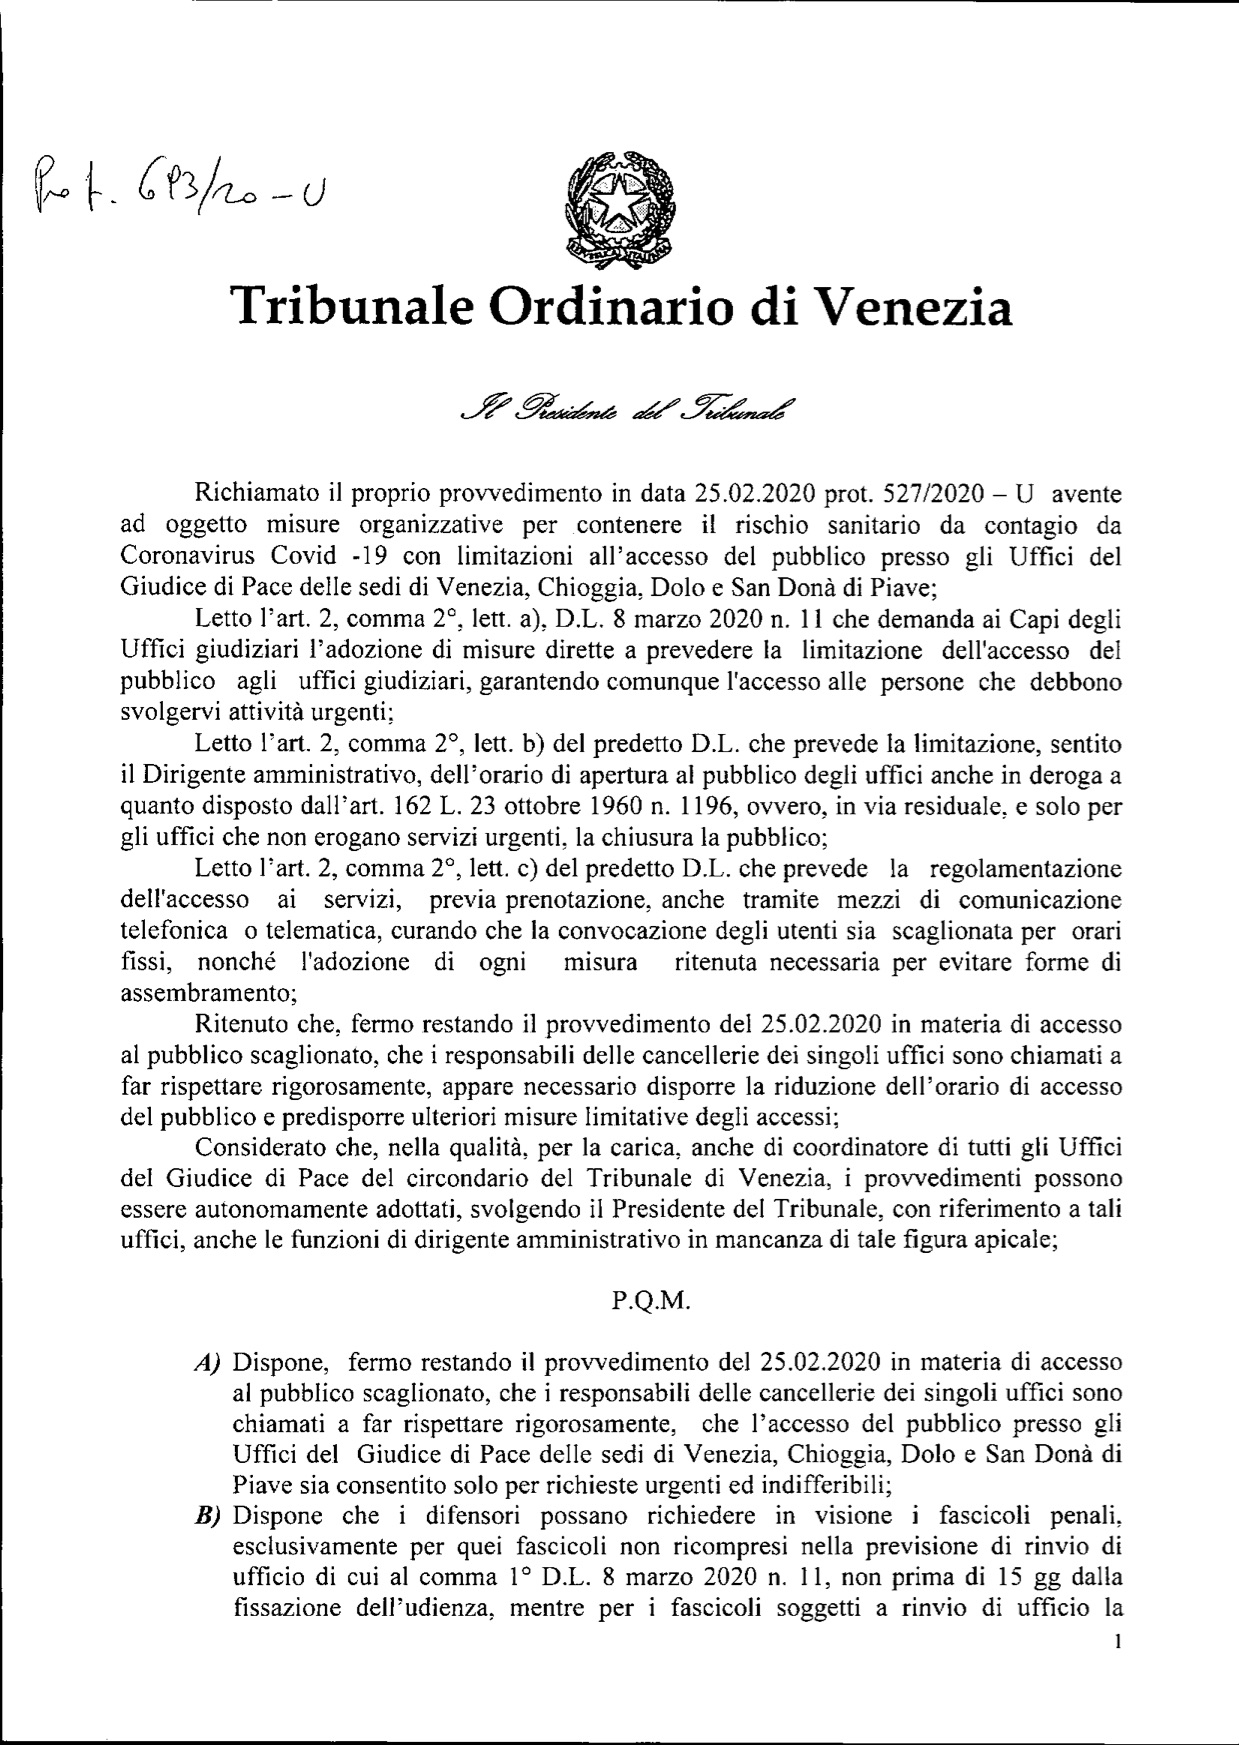 Provvedimento del Presidente del Tribunale di Venezia prot.693-20-U  per gli uffici del GdP del circondario